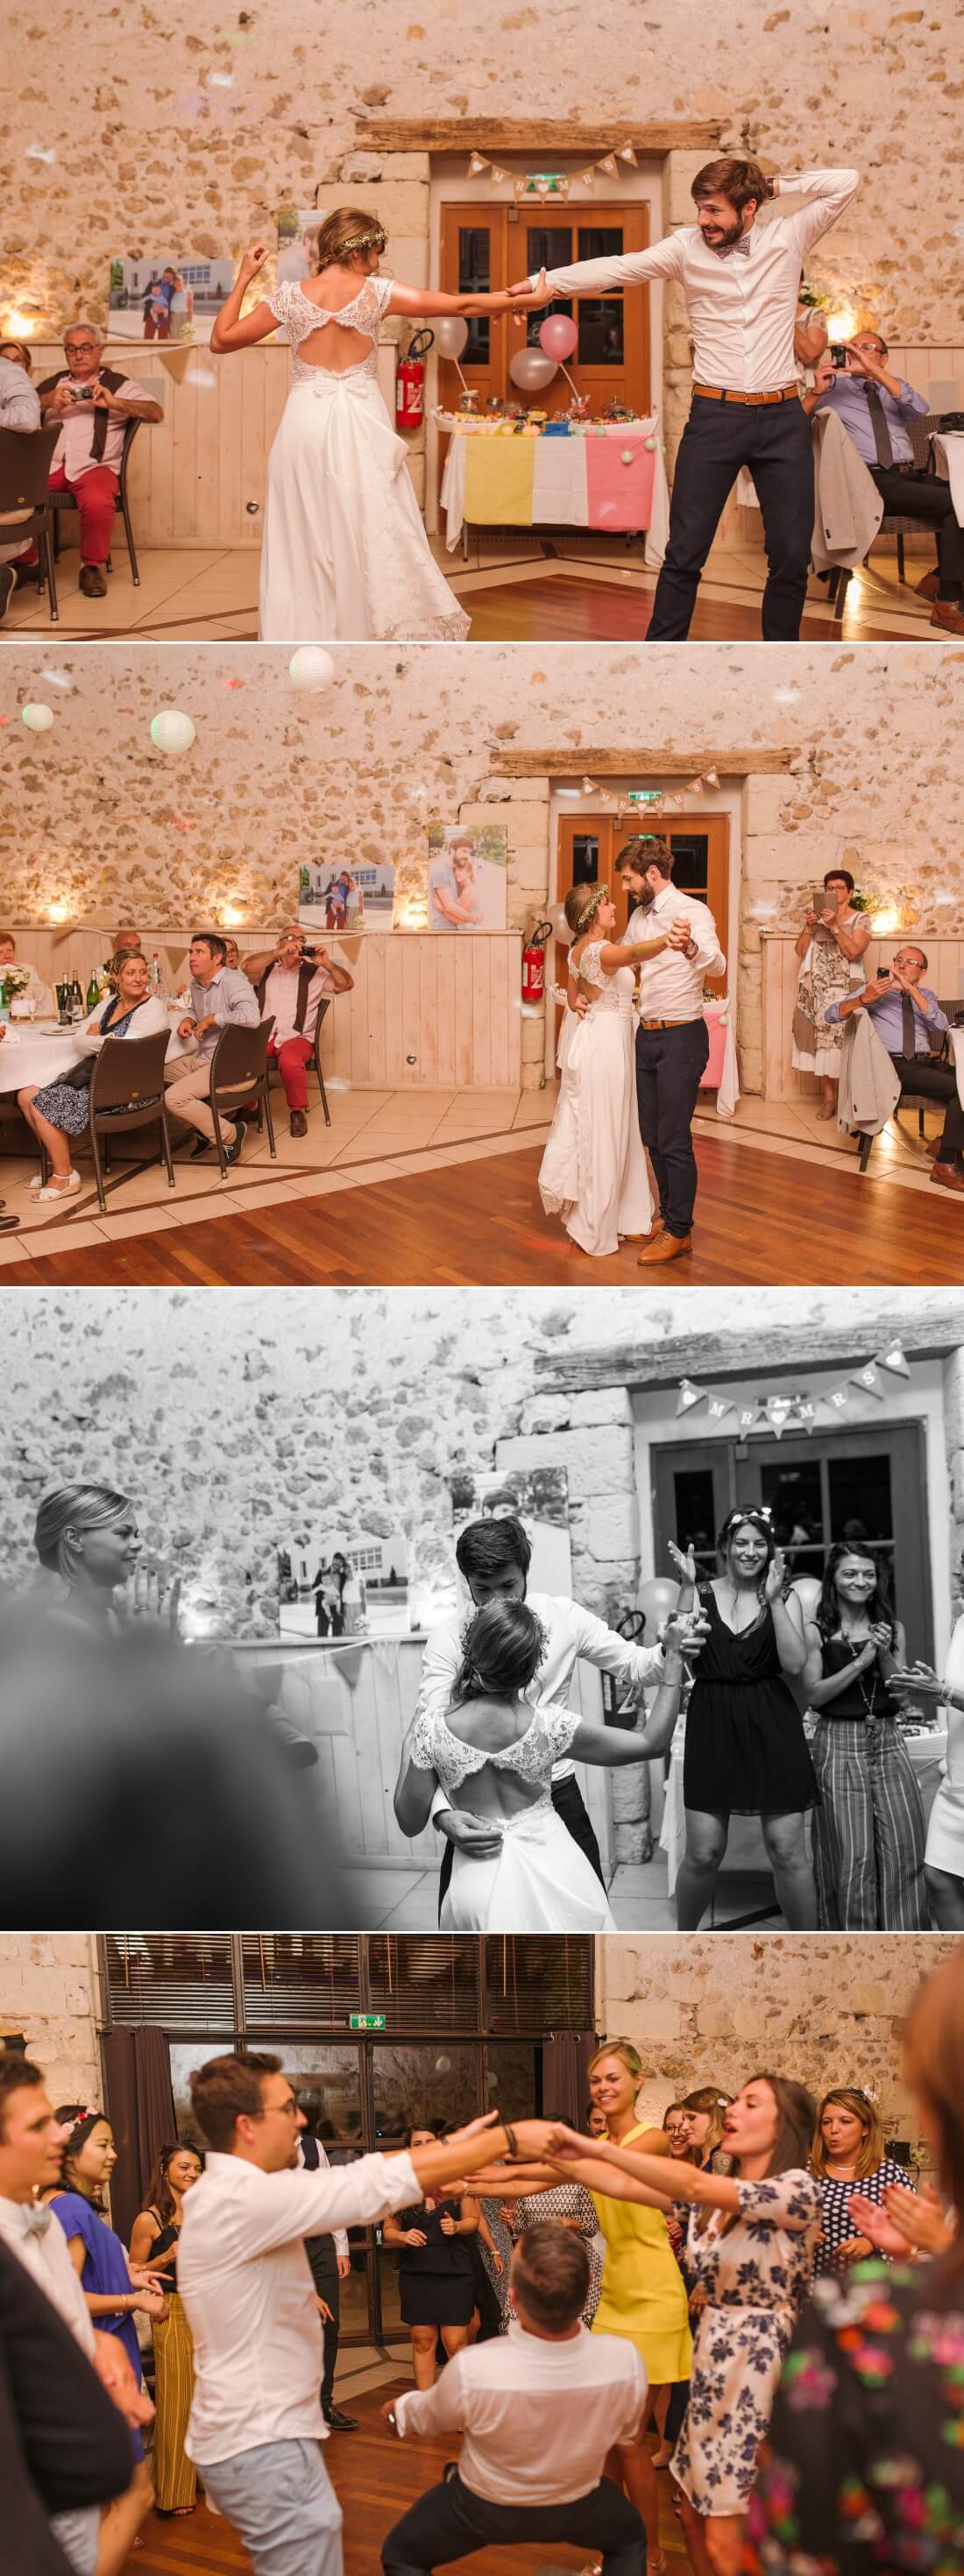 Première danse lors d'un mariage à La Racaudière en Touraine - Photographe mariage tours